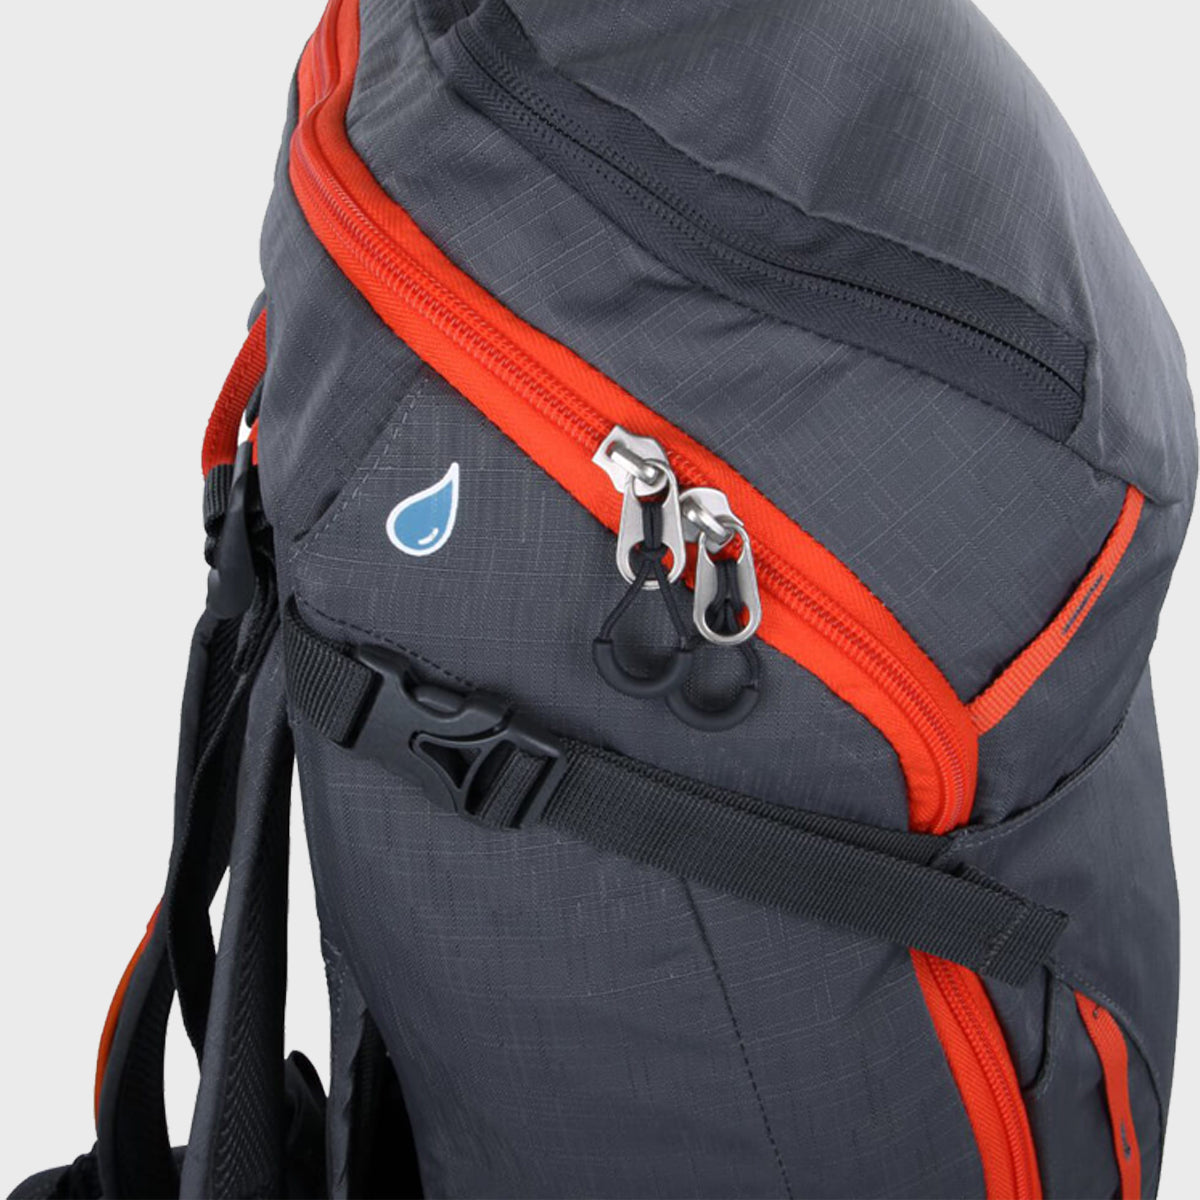 Helios 35 Backpack - Portal Outdoor UK